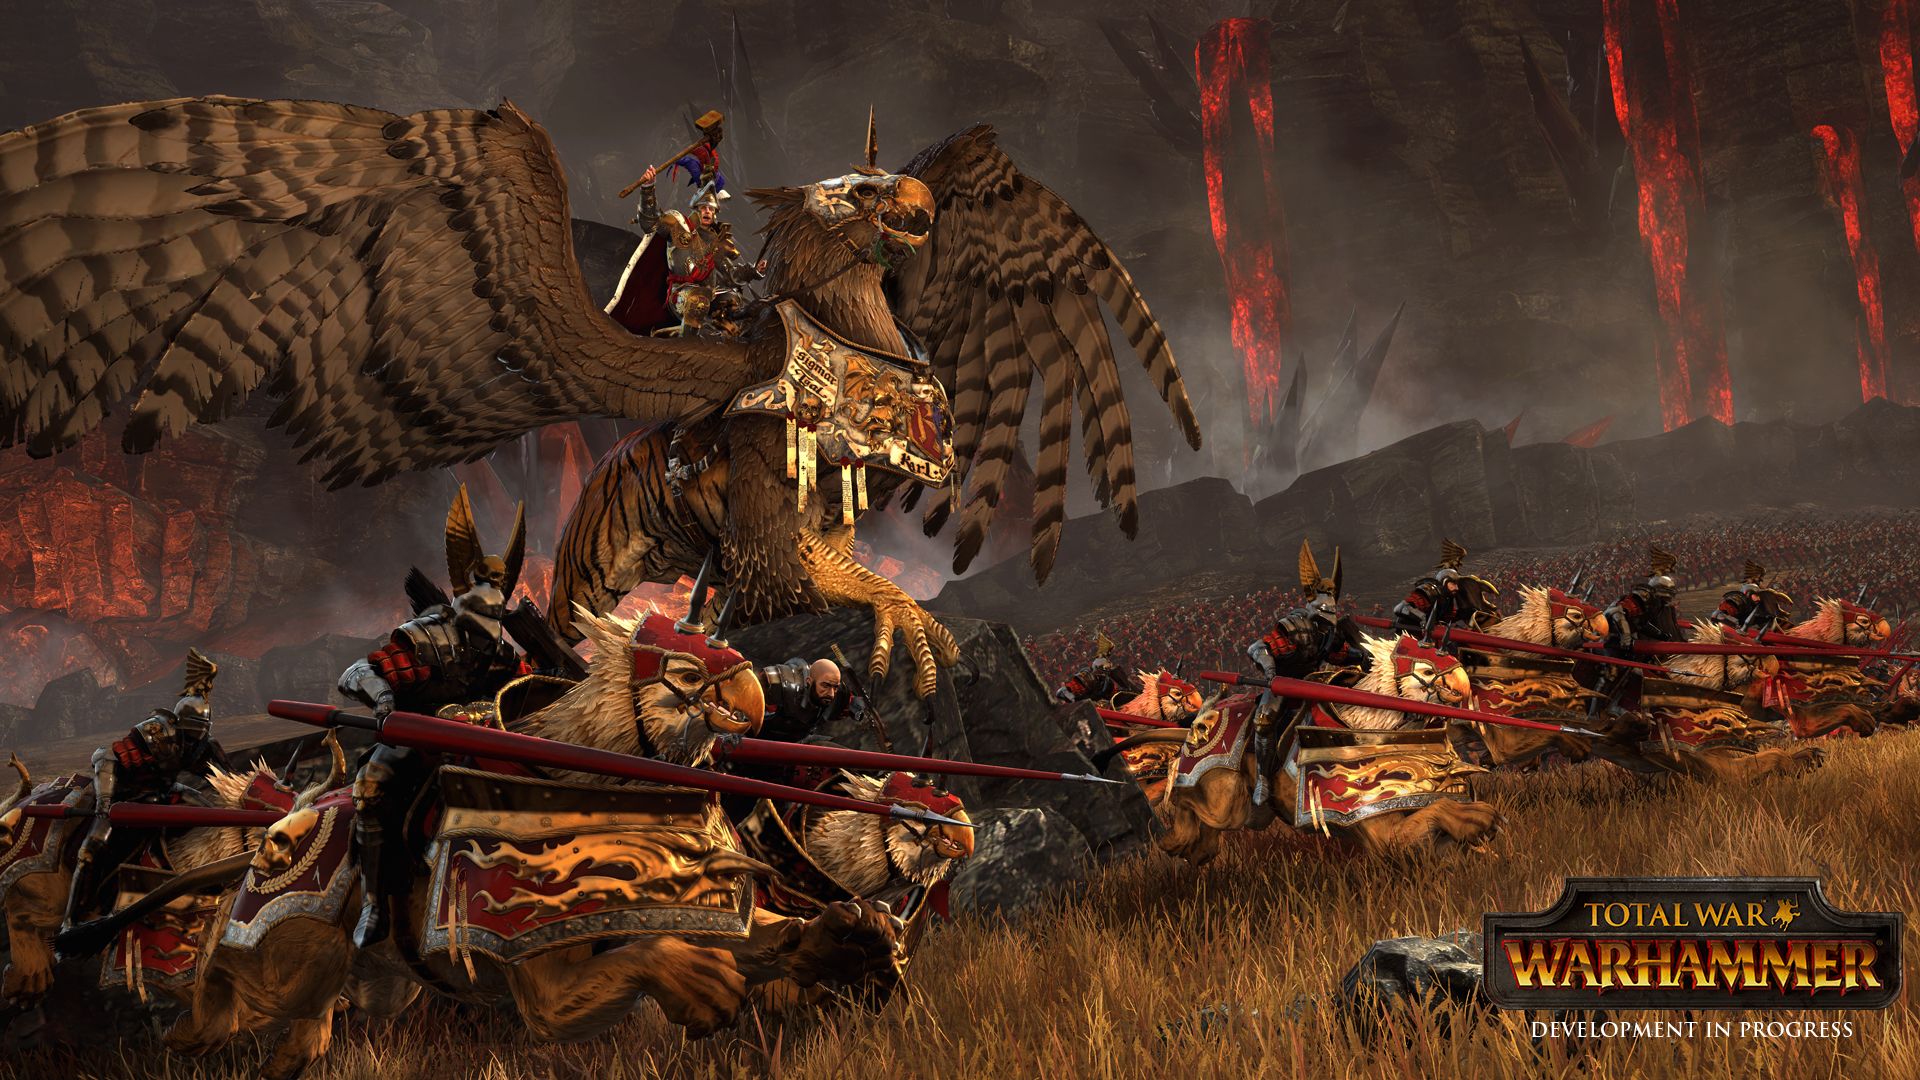 Total War Warhammer screenshots show fantasy battle